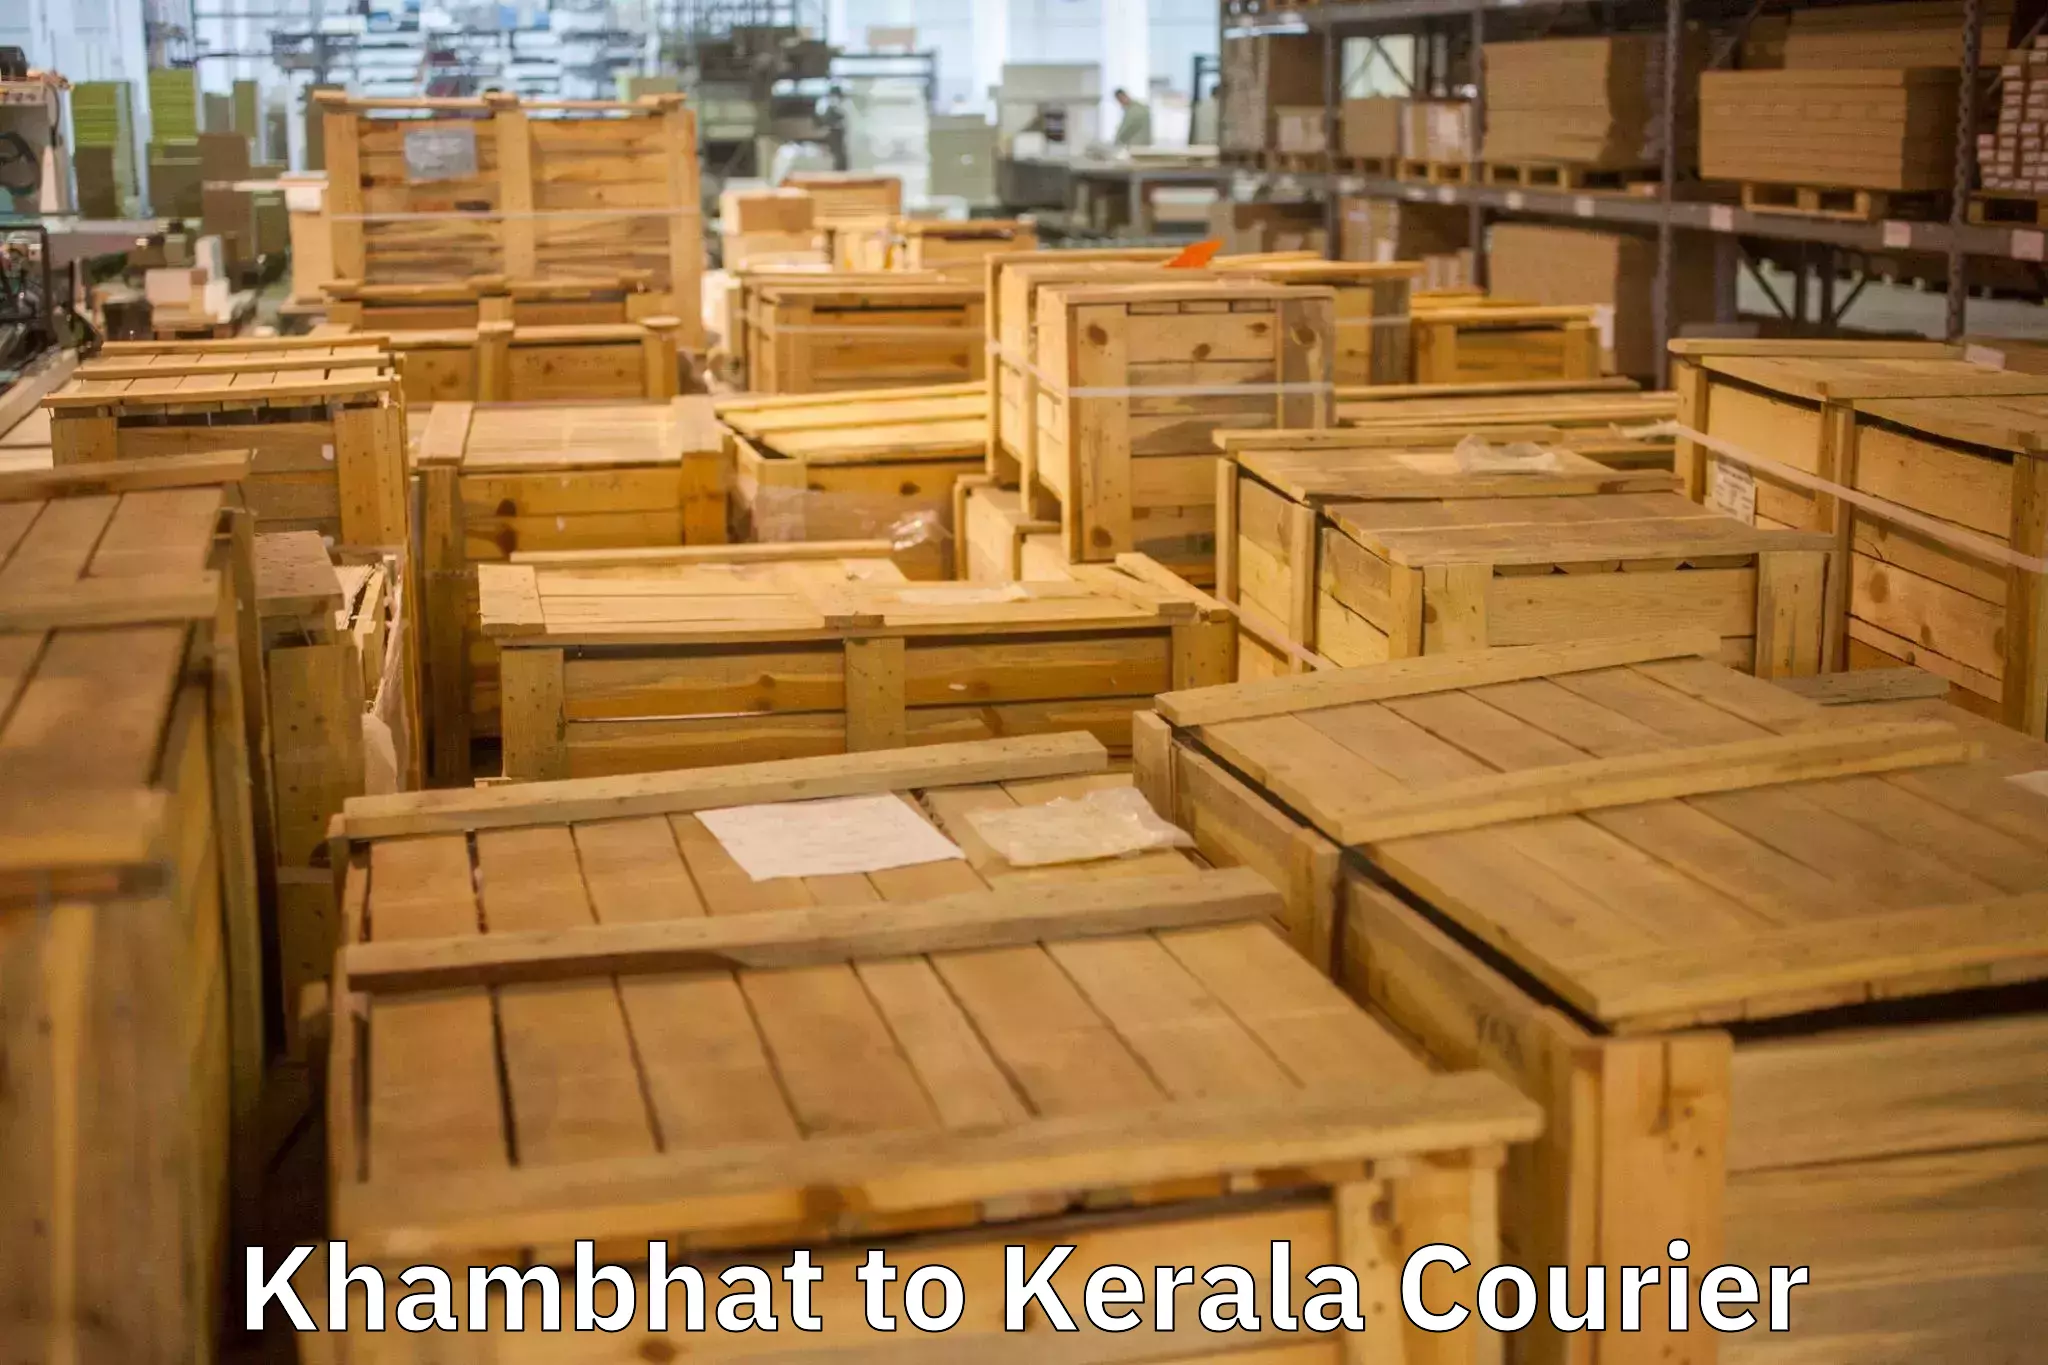 Furniture moving experts Khambhat to Calicut